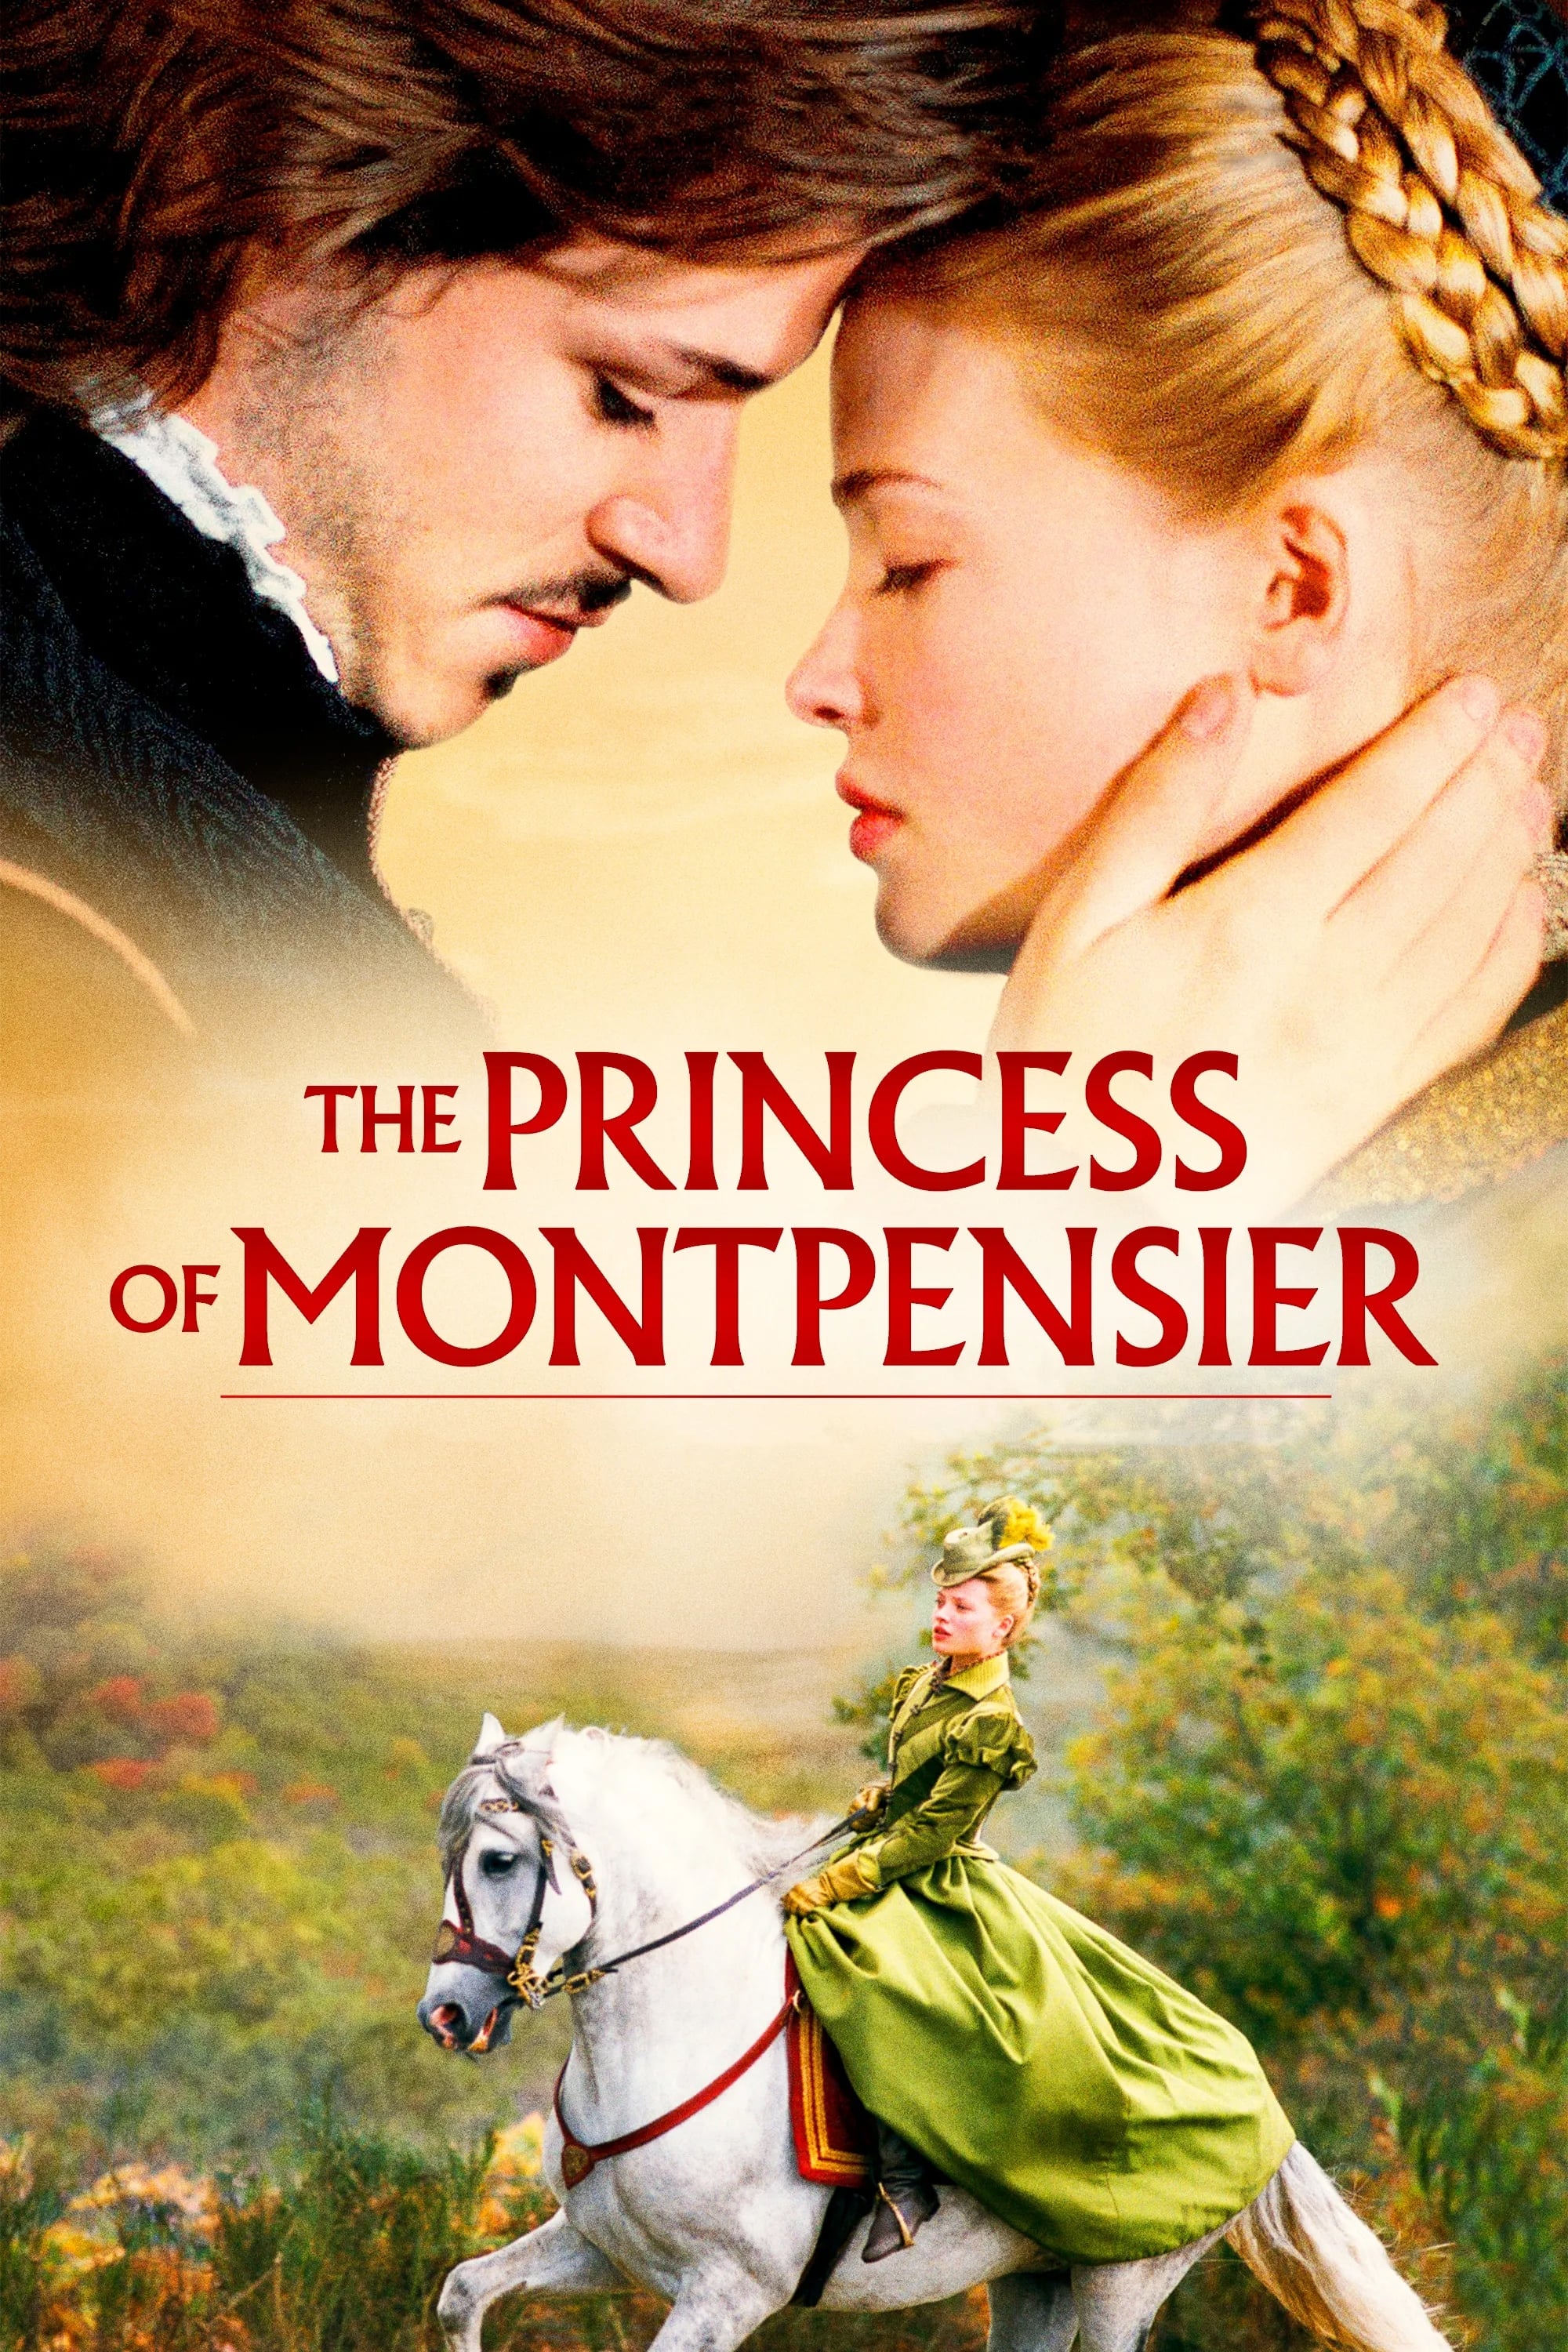 Die Prinzessin von Montpensier (2010)